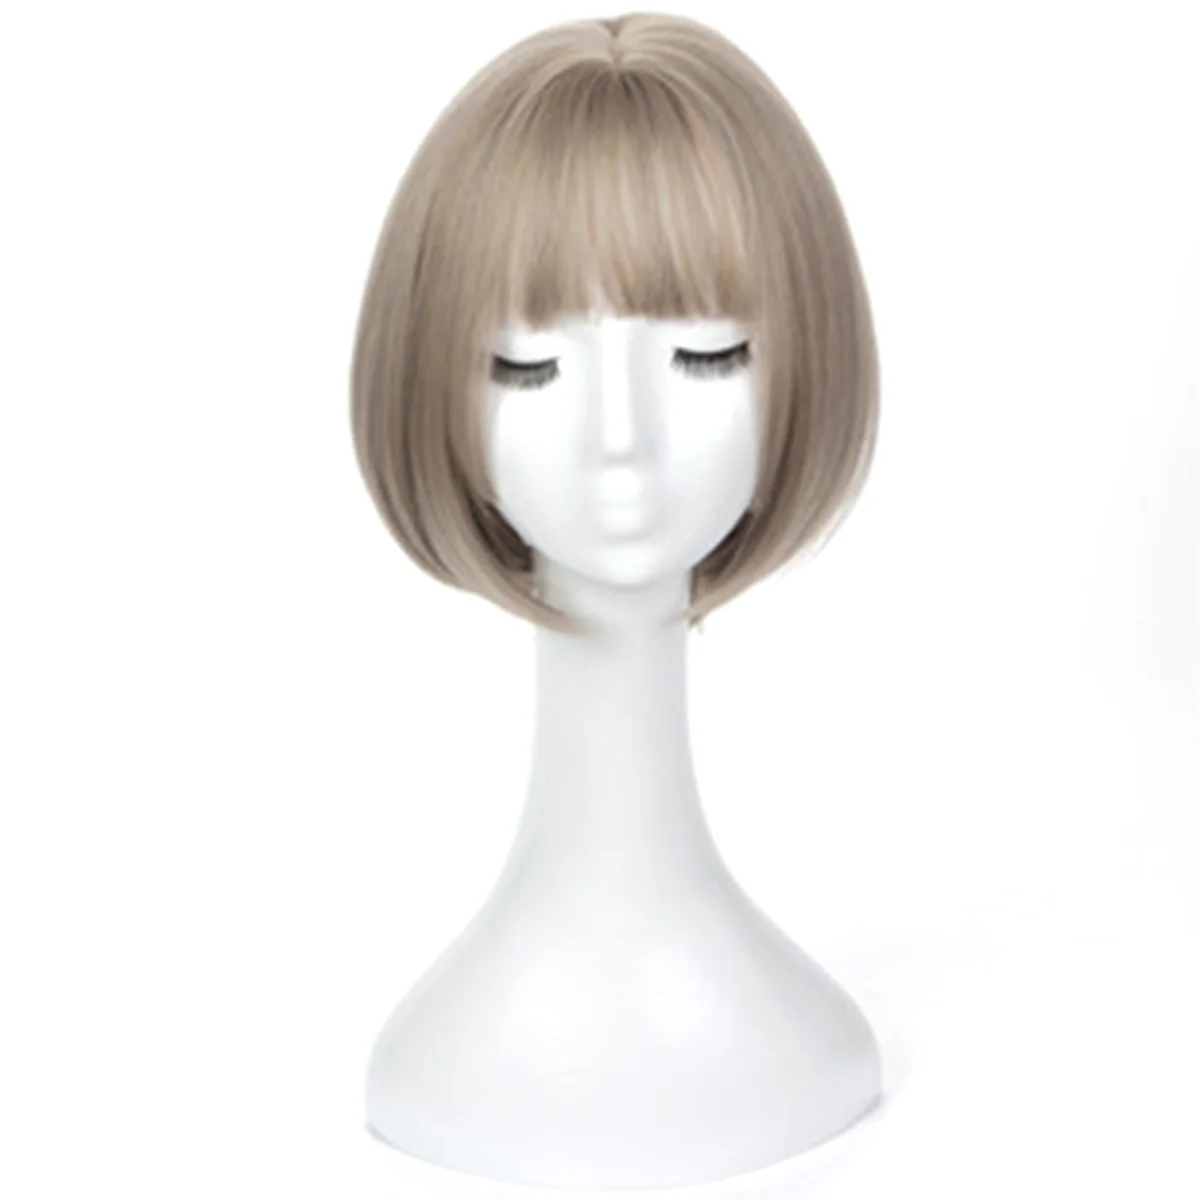 Parrucca Bob Bobo parrucca per le donne, parrucca corta dall'aspetto naturale, parrucca dritta per principianti per le versioni quotidiane della corea grigio